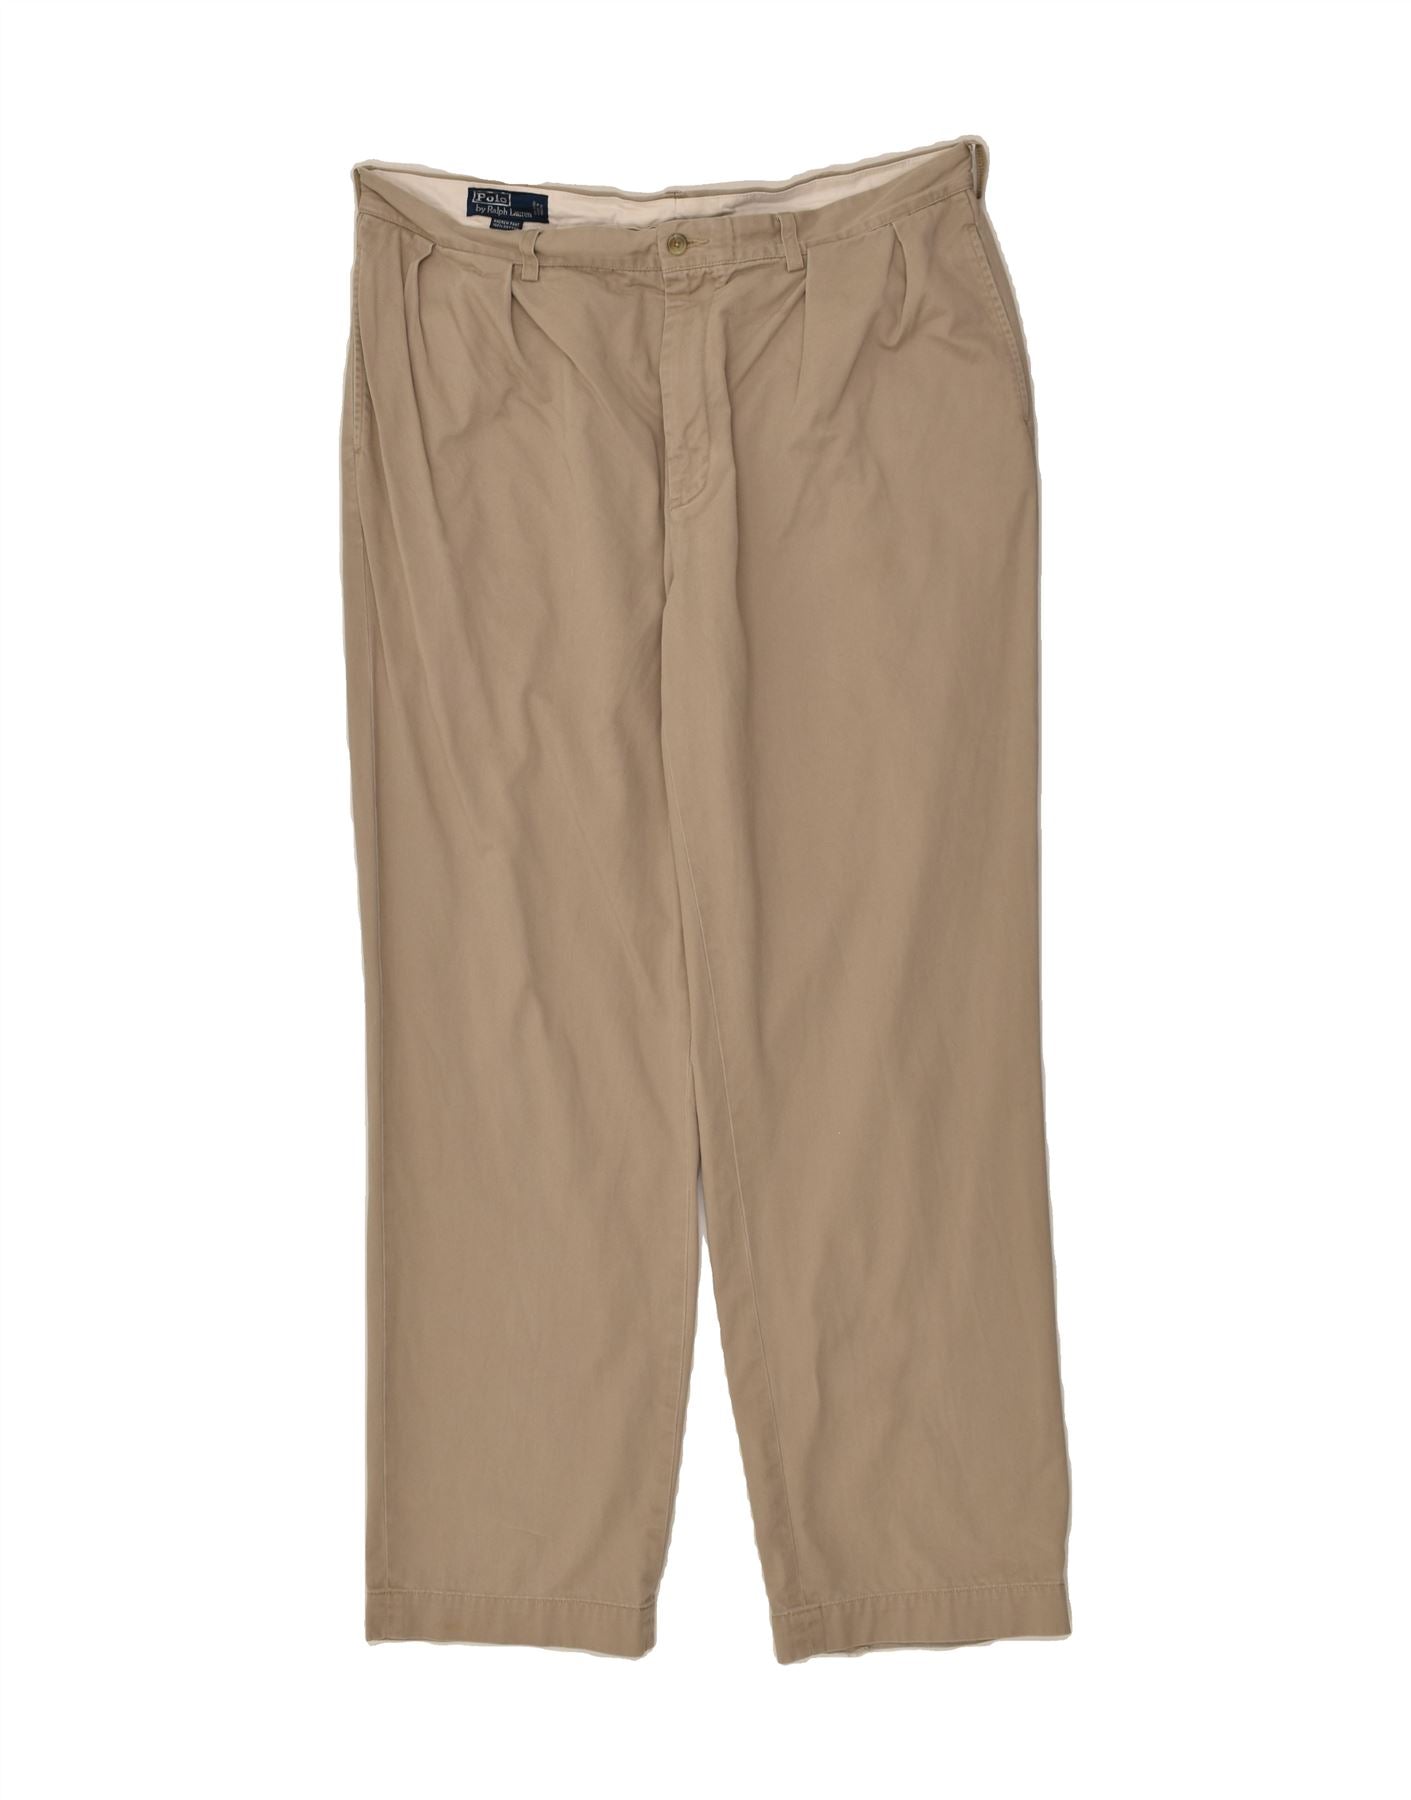 Buy Polo Ralph Lauren Pants, Clothing Online